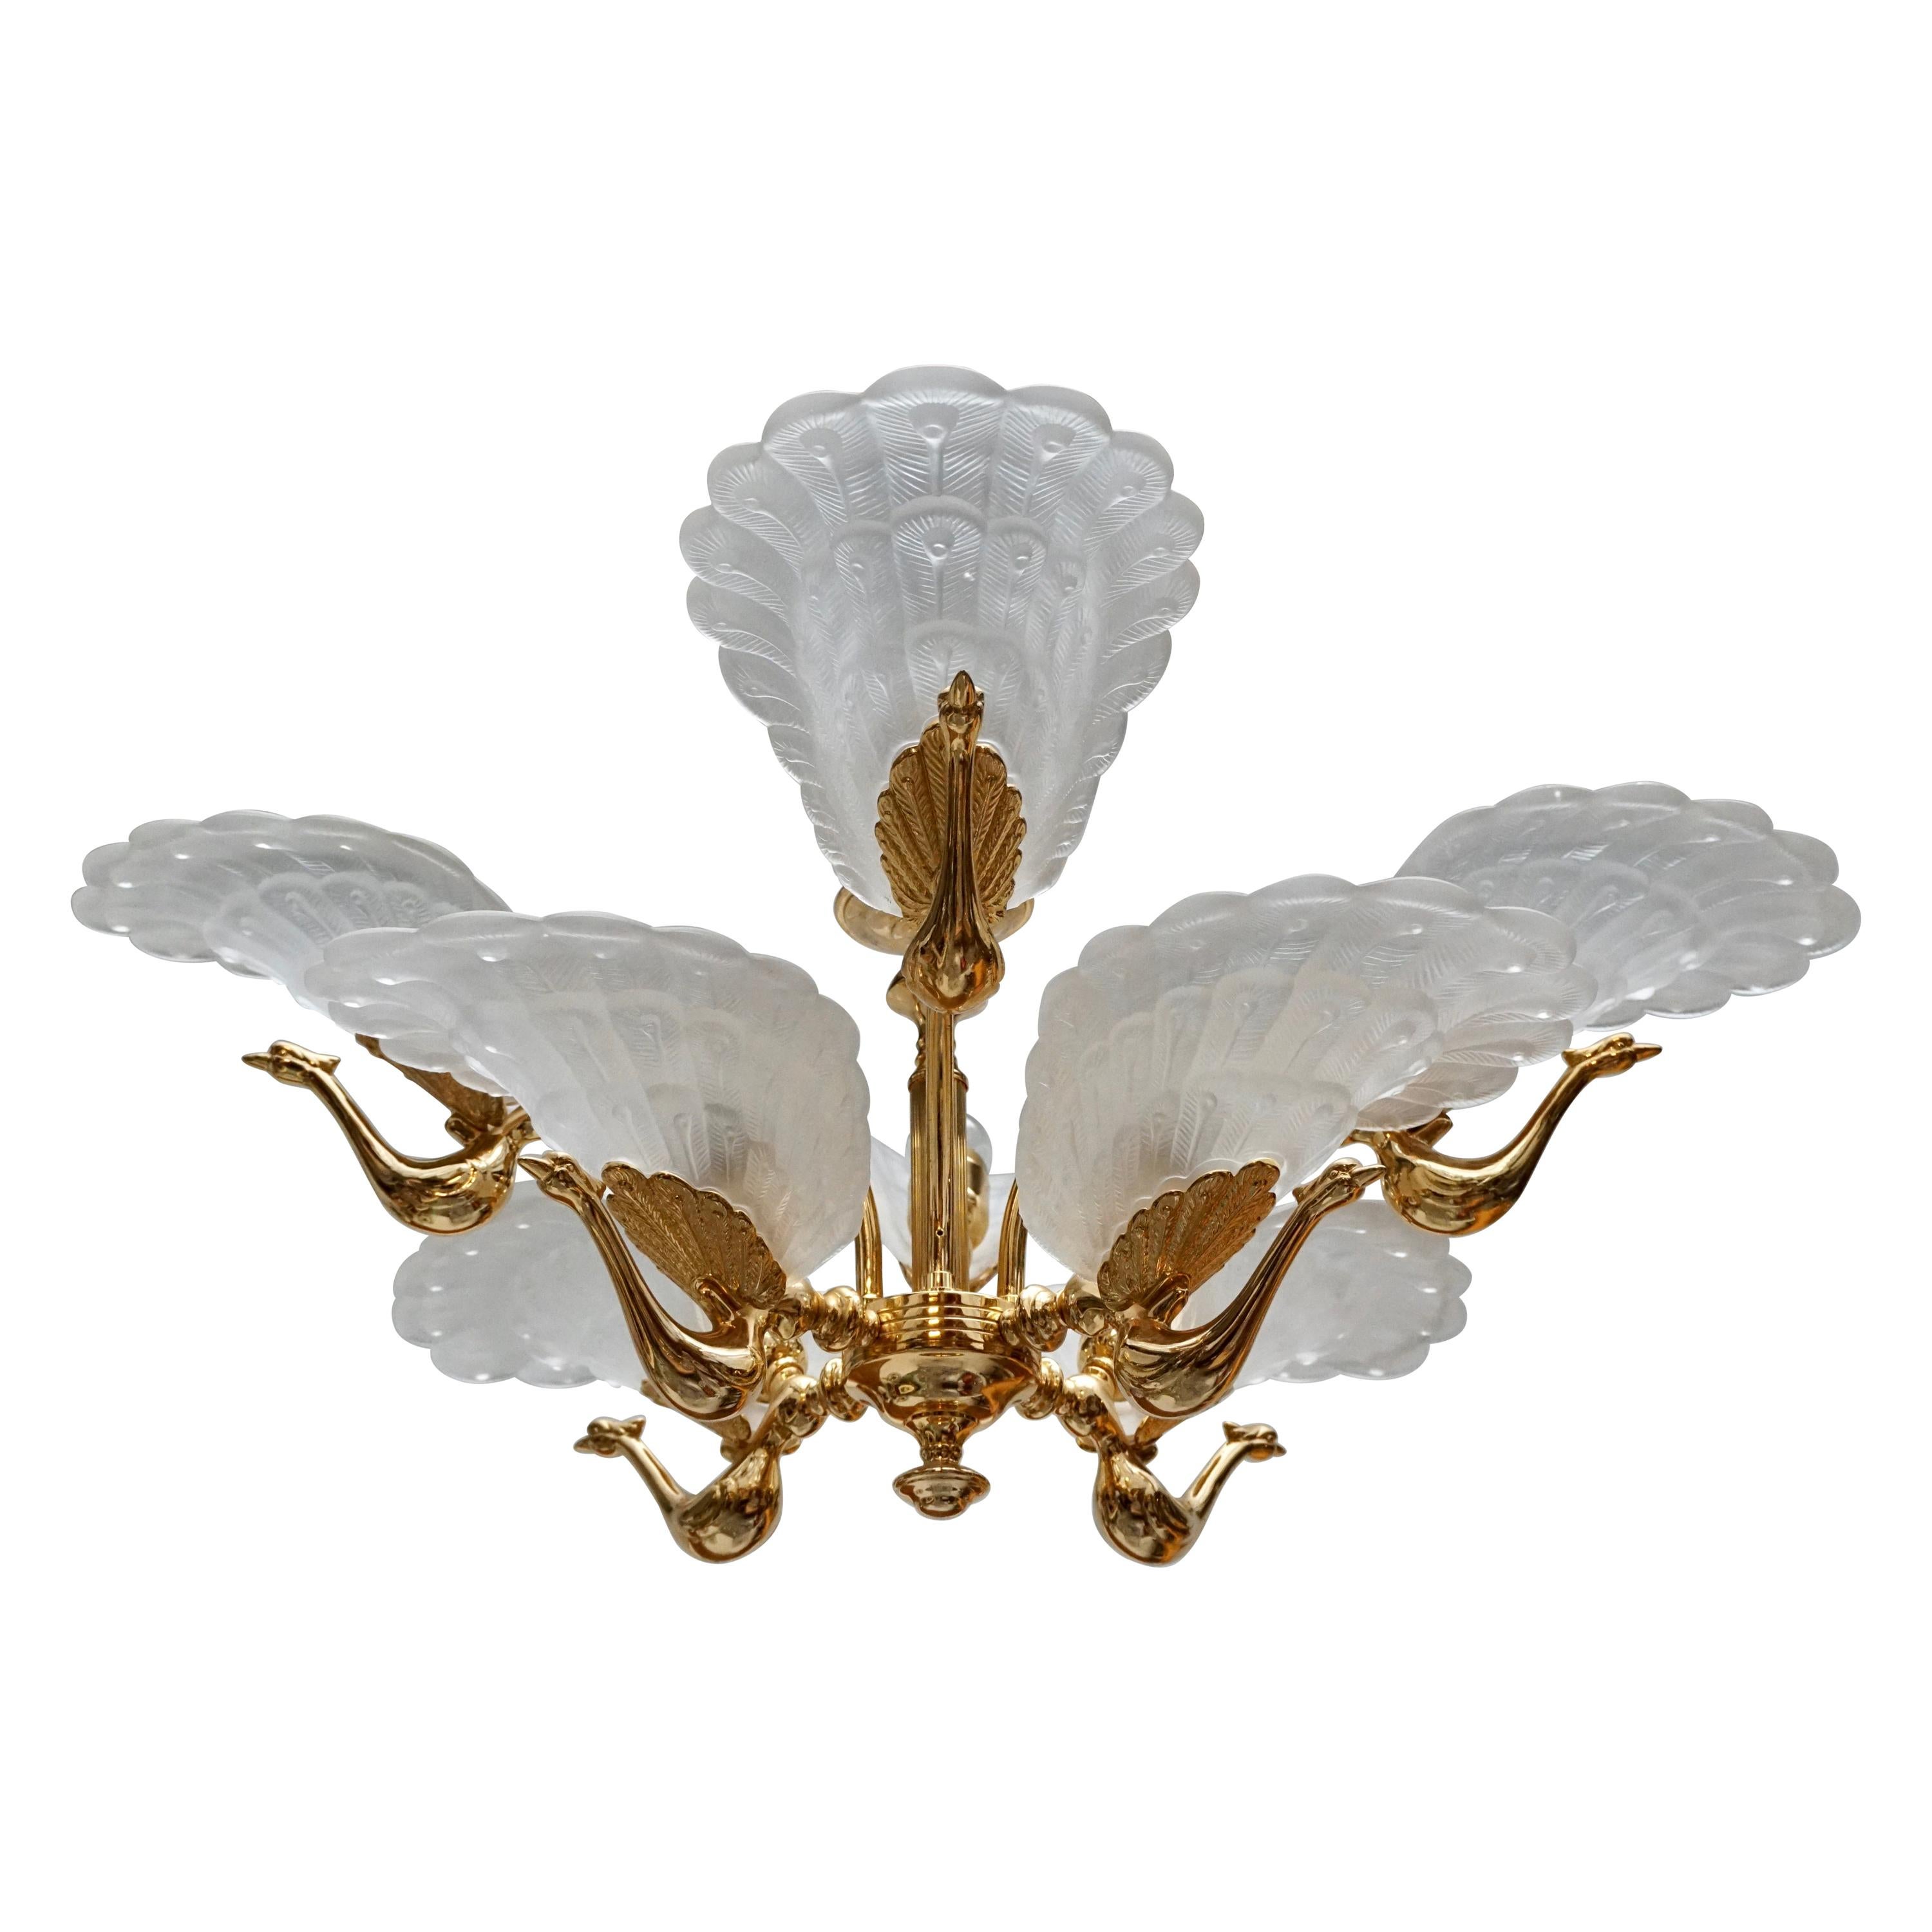 Rare Midcentury Chandelier / Pendant with Golden Bronze Glass Peacock Sculptures